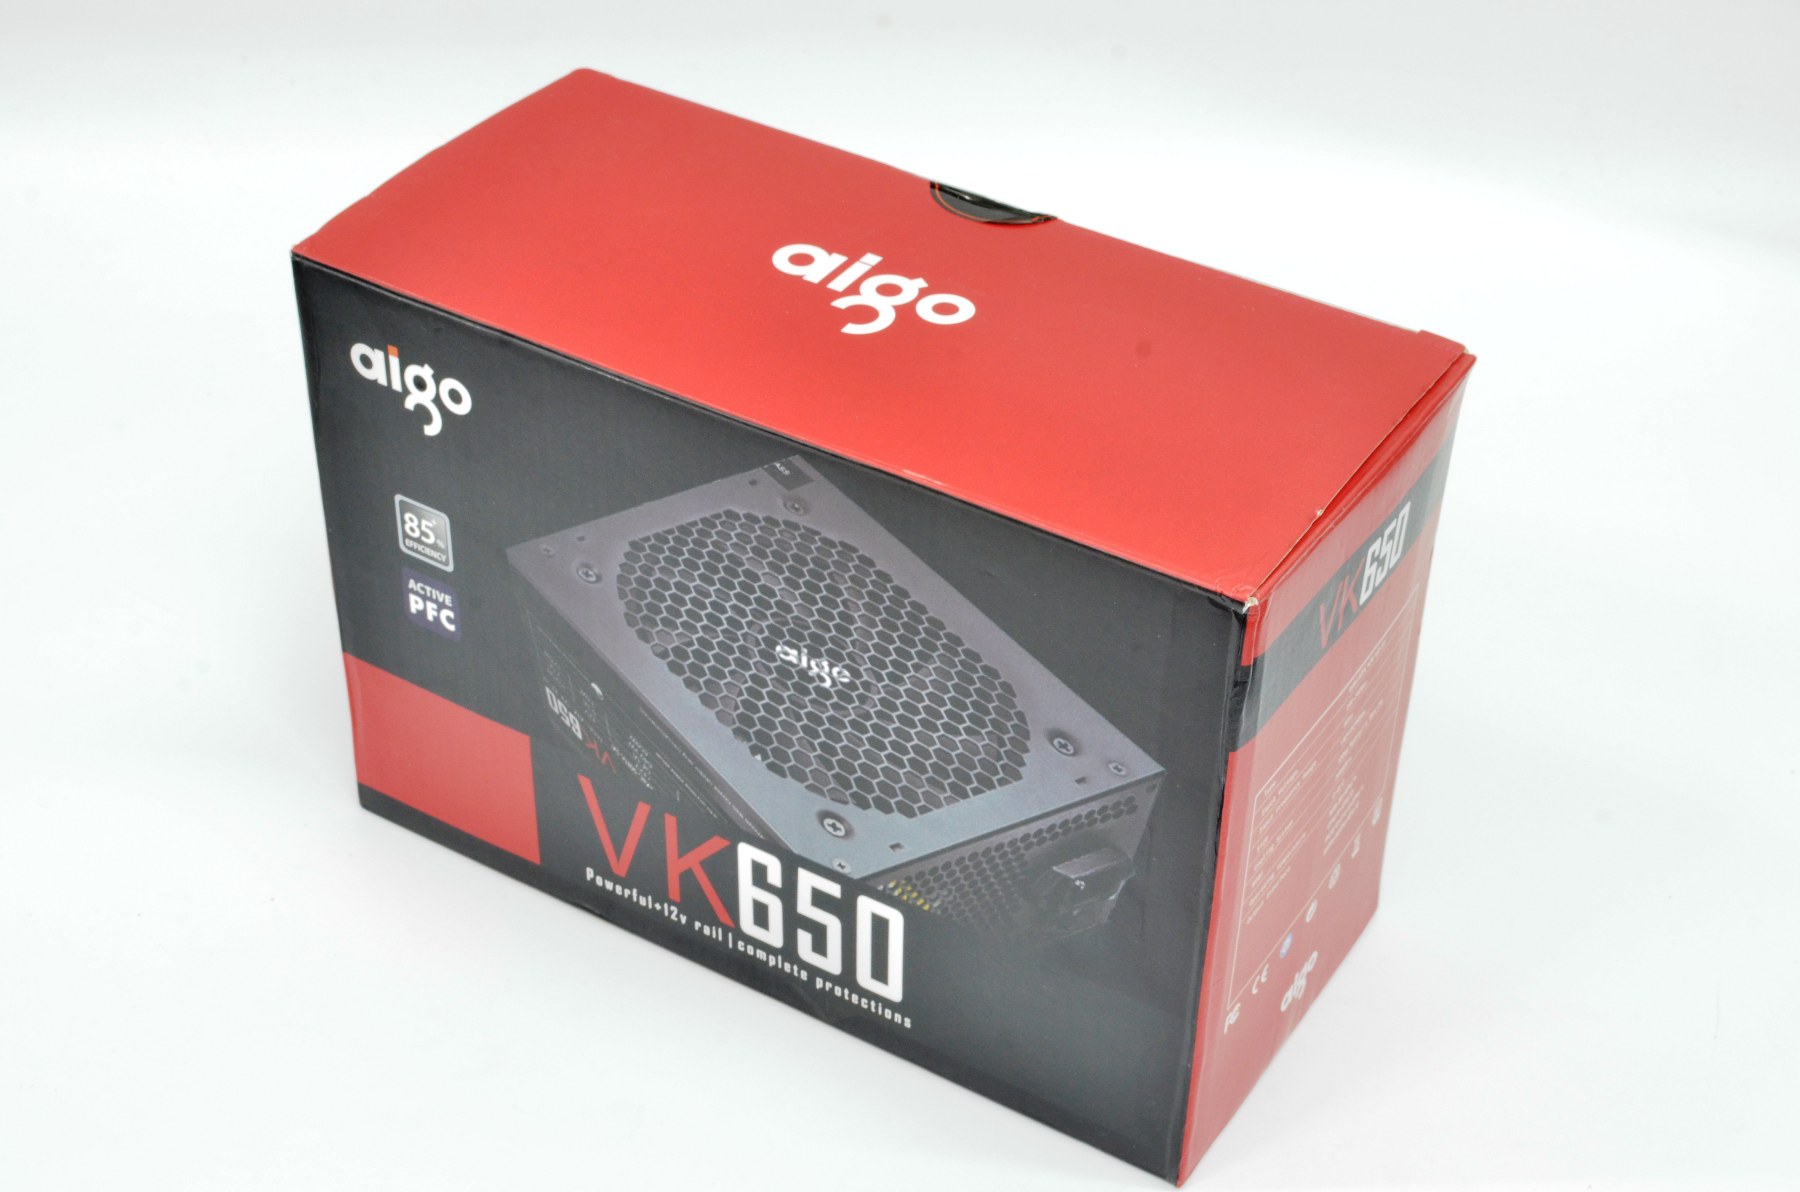 PSU AIGO VK650 lựa chọn số 1 cho nguồn phân khúc tầm trung